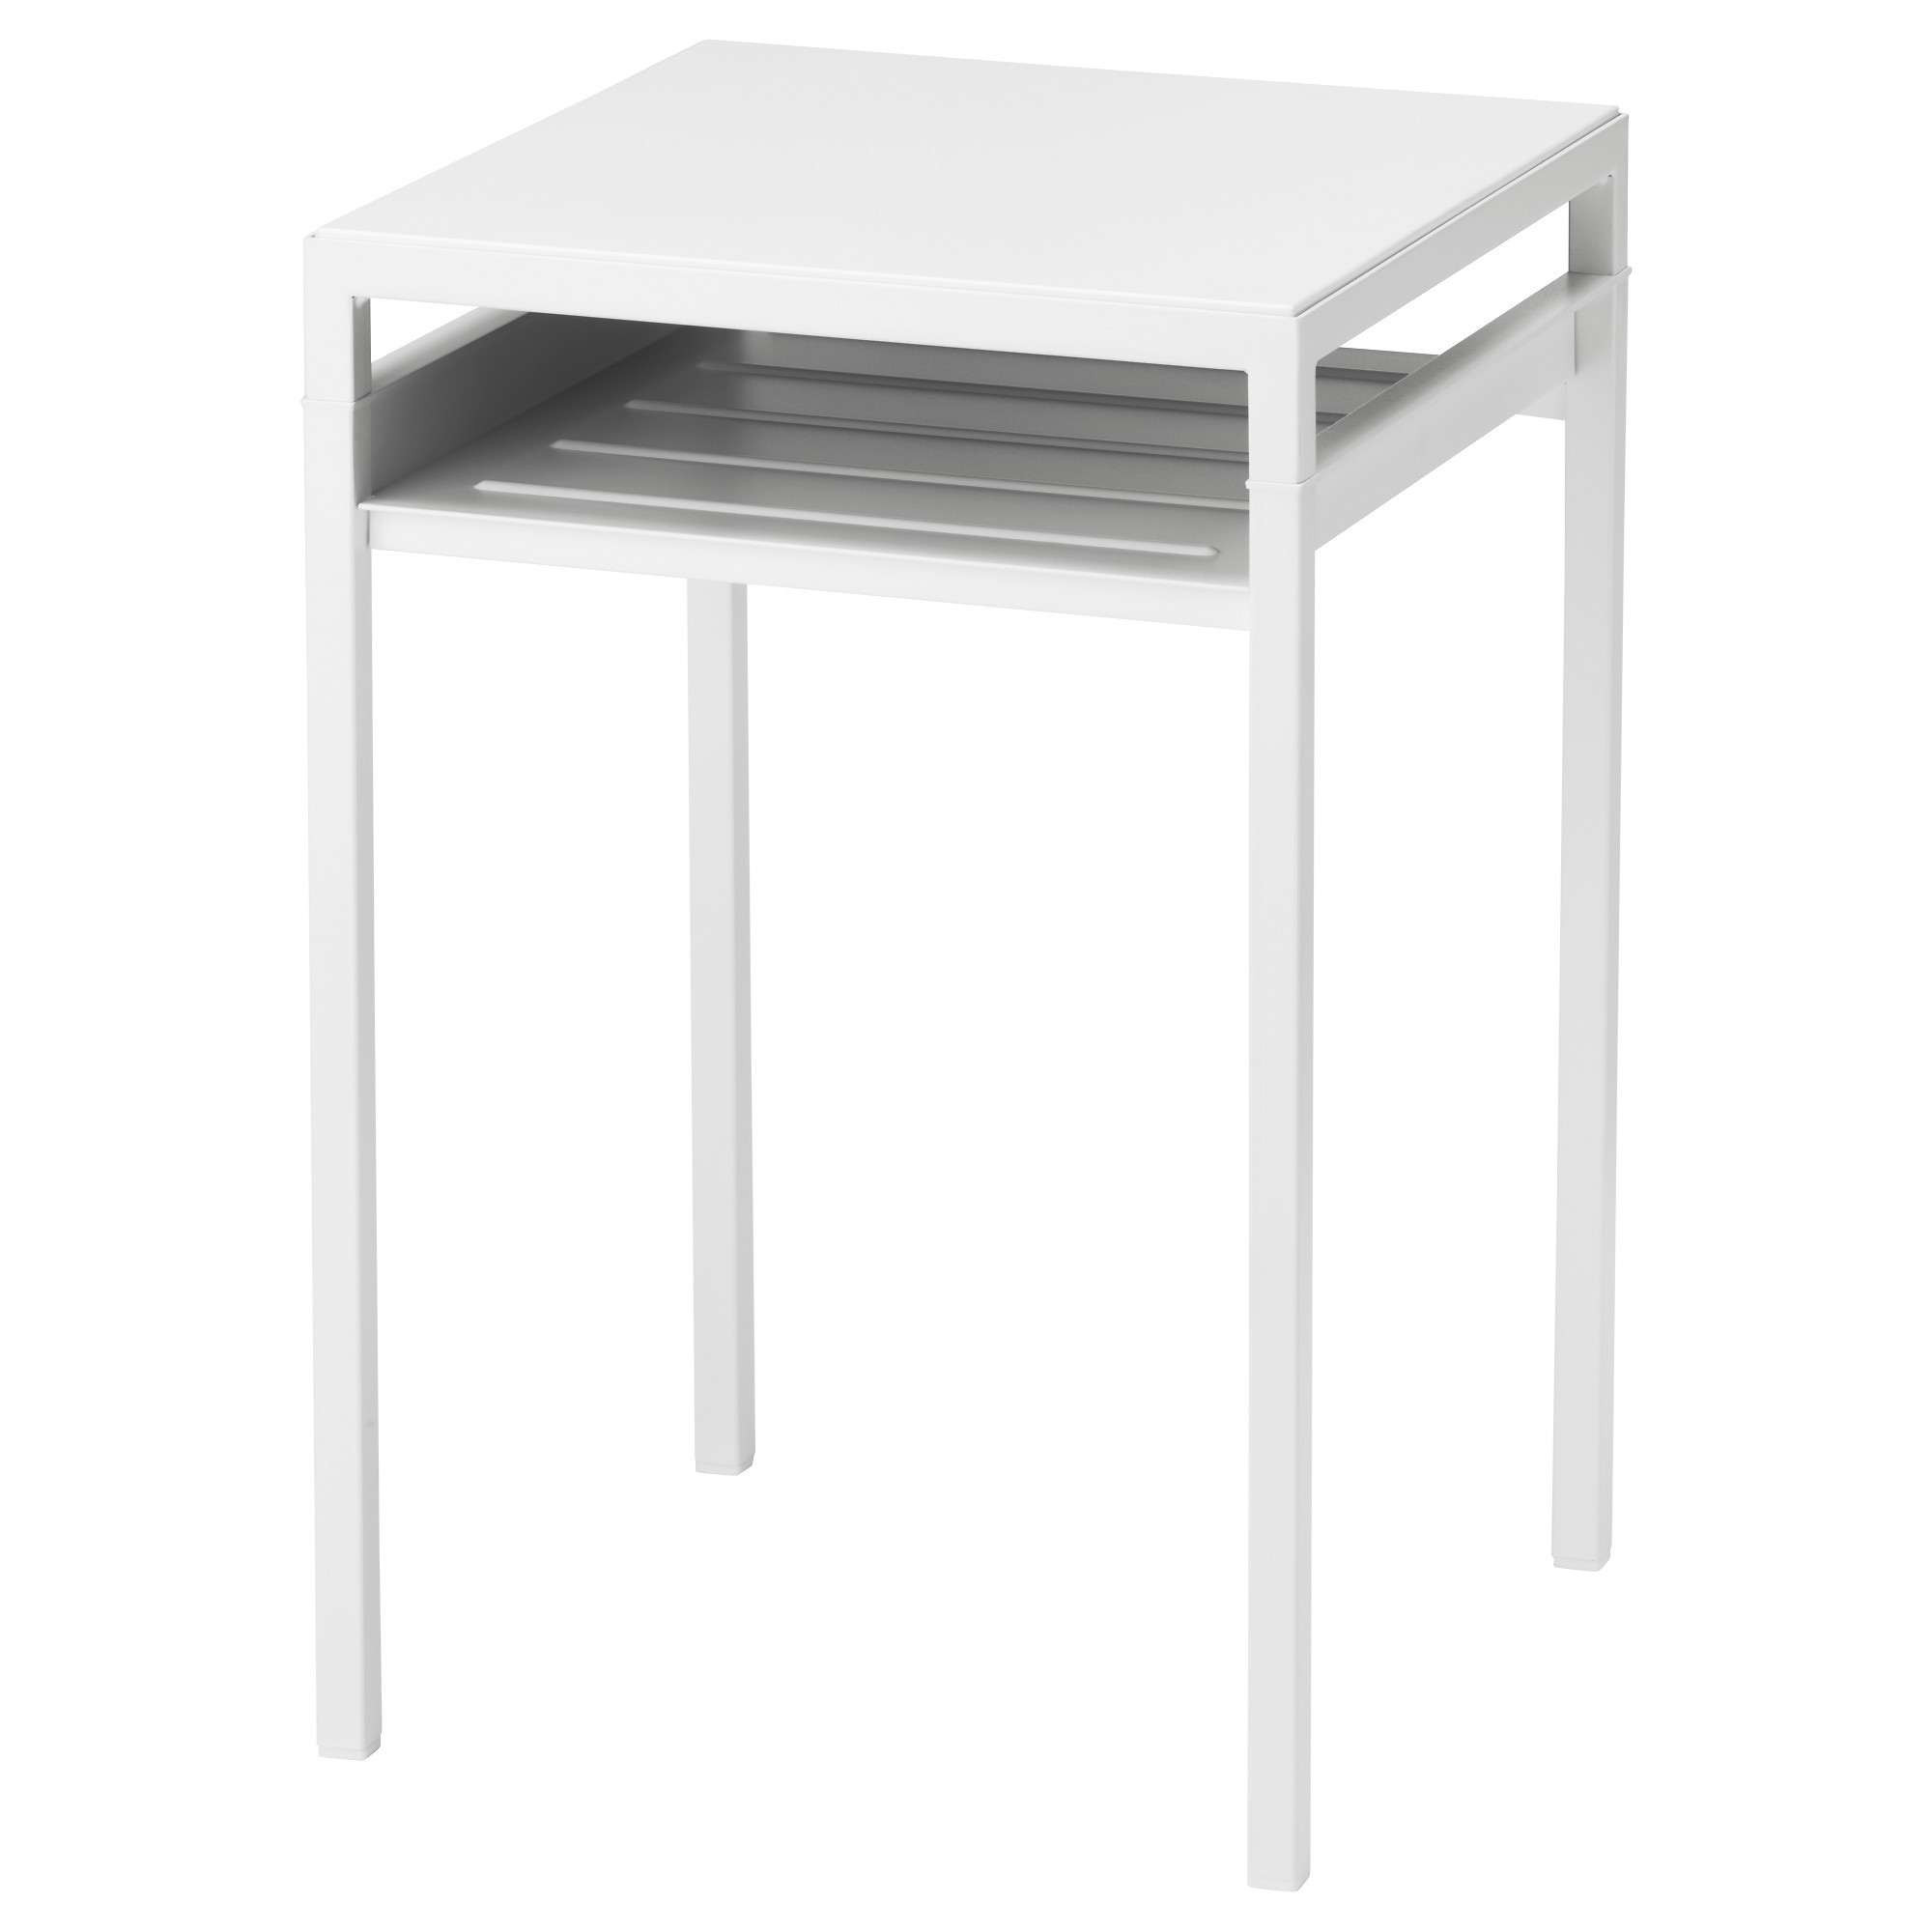 Kleiner Tisch Ikea
 Kleiner Gartentisch Ikea